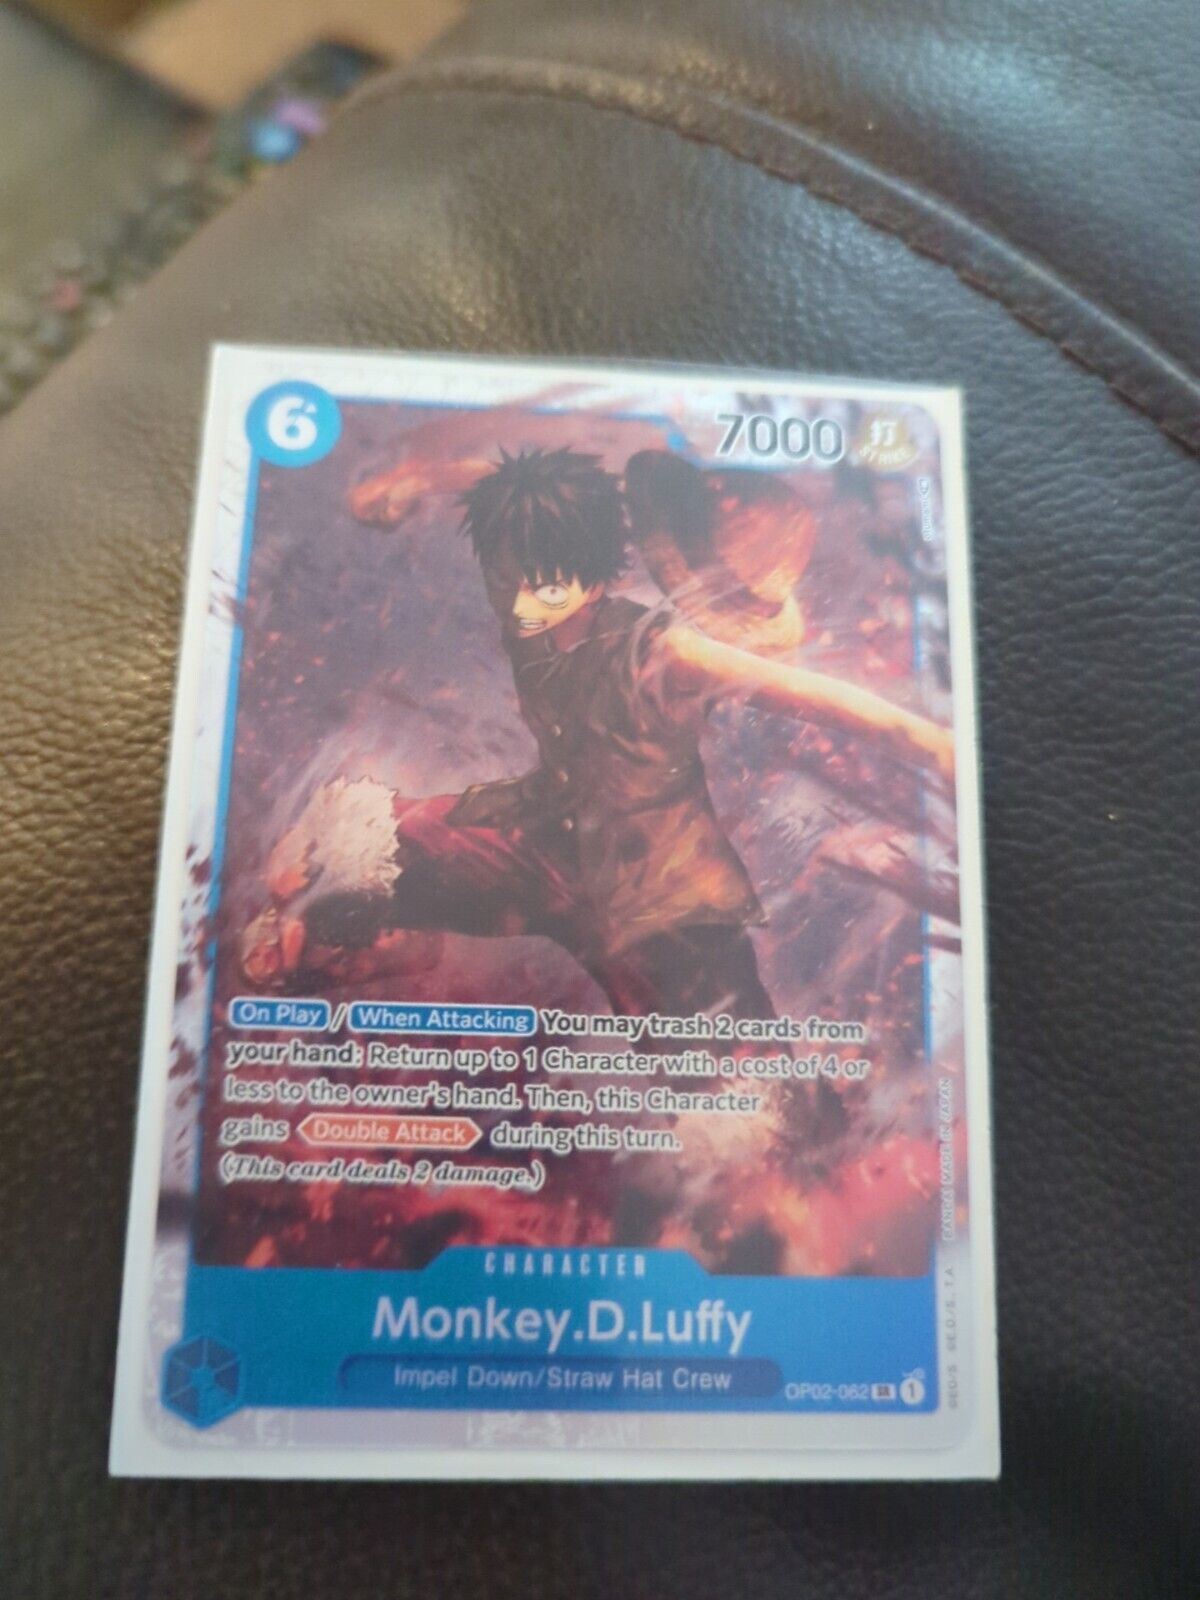 OP02-062 Monkey.D.Luffy Super Rare One Piece TCG Card